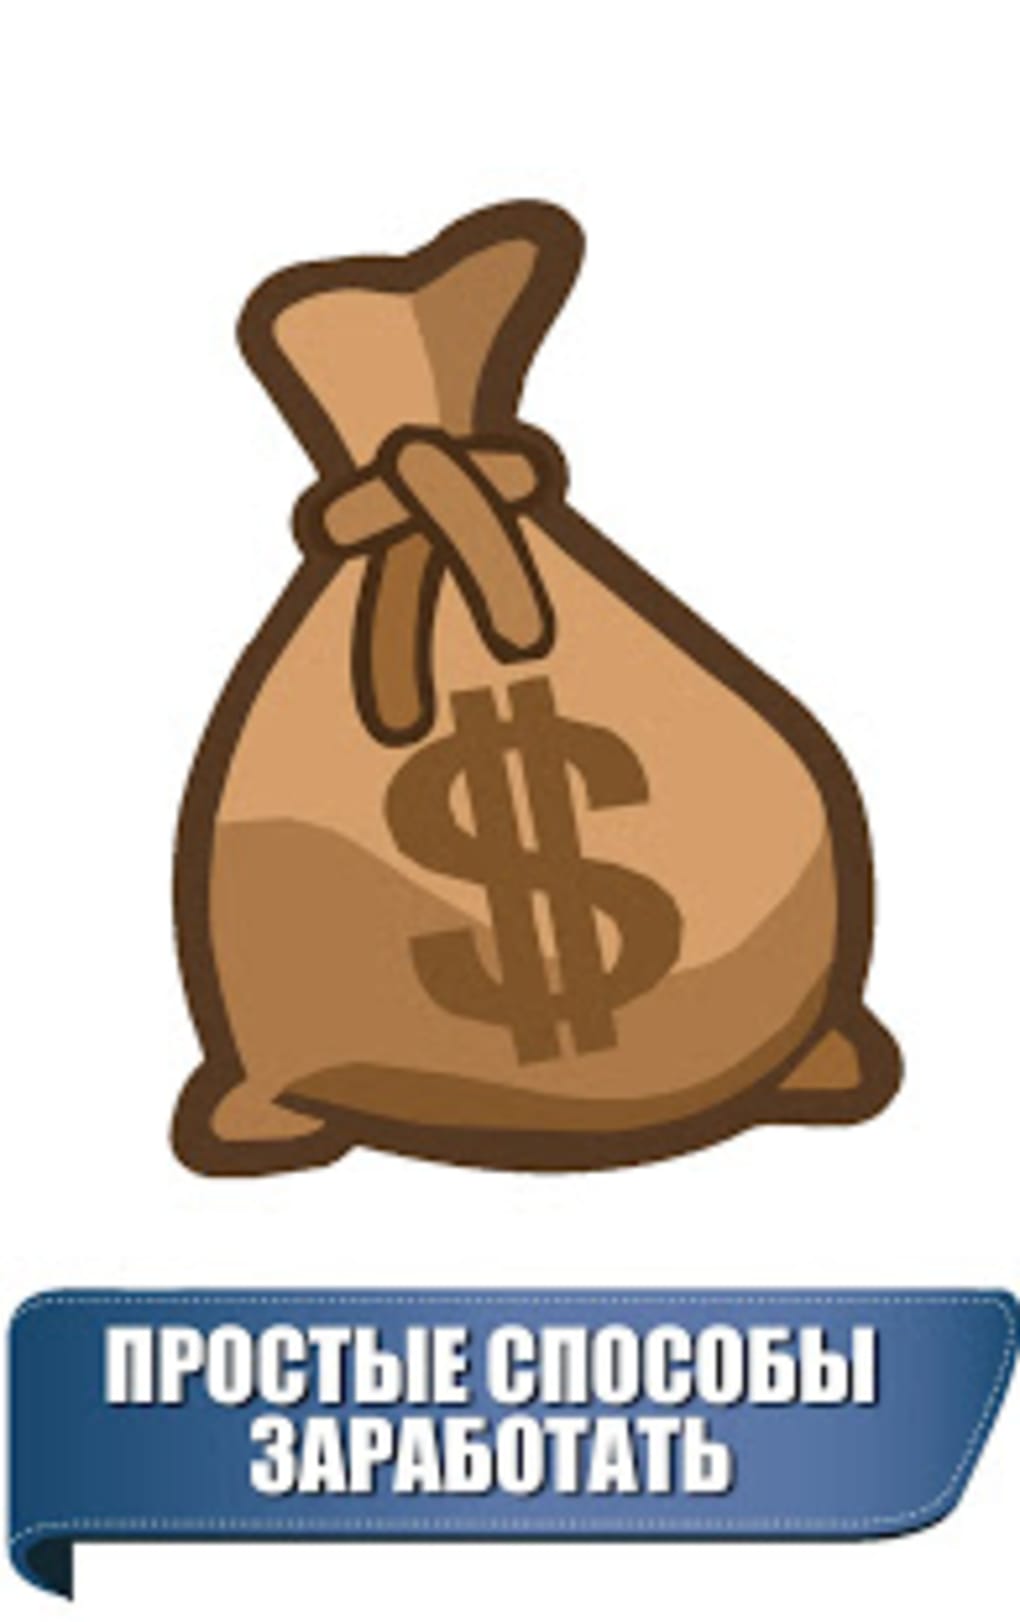 Skachat Easy Money - app store make money earn easy cash